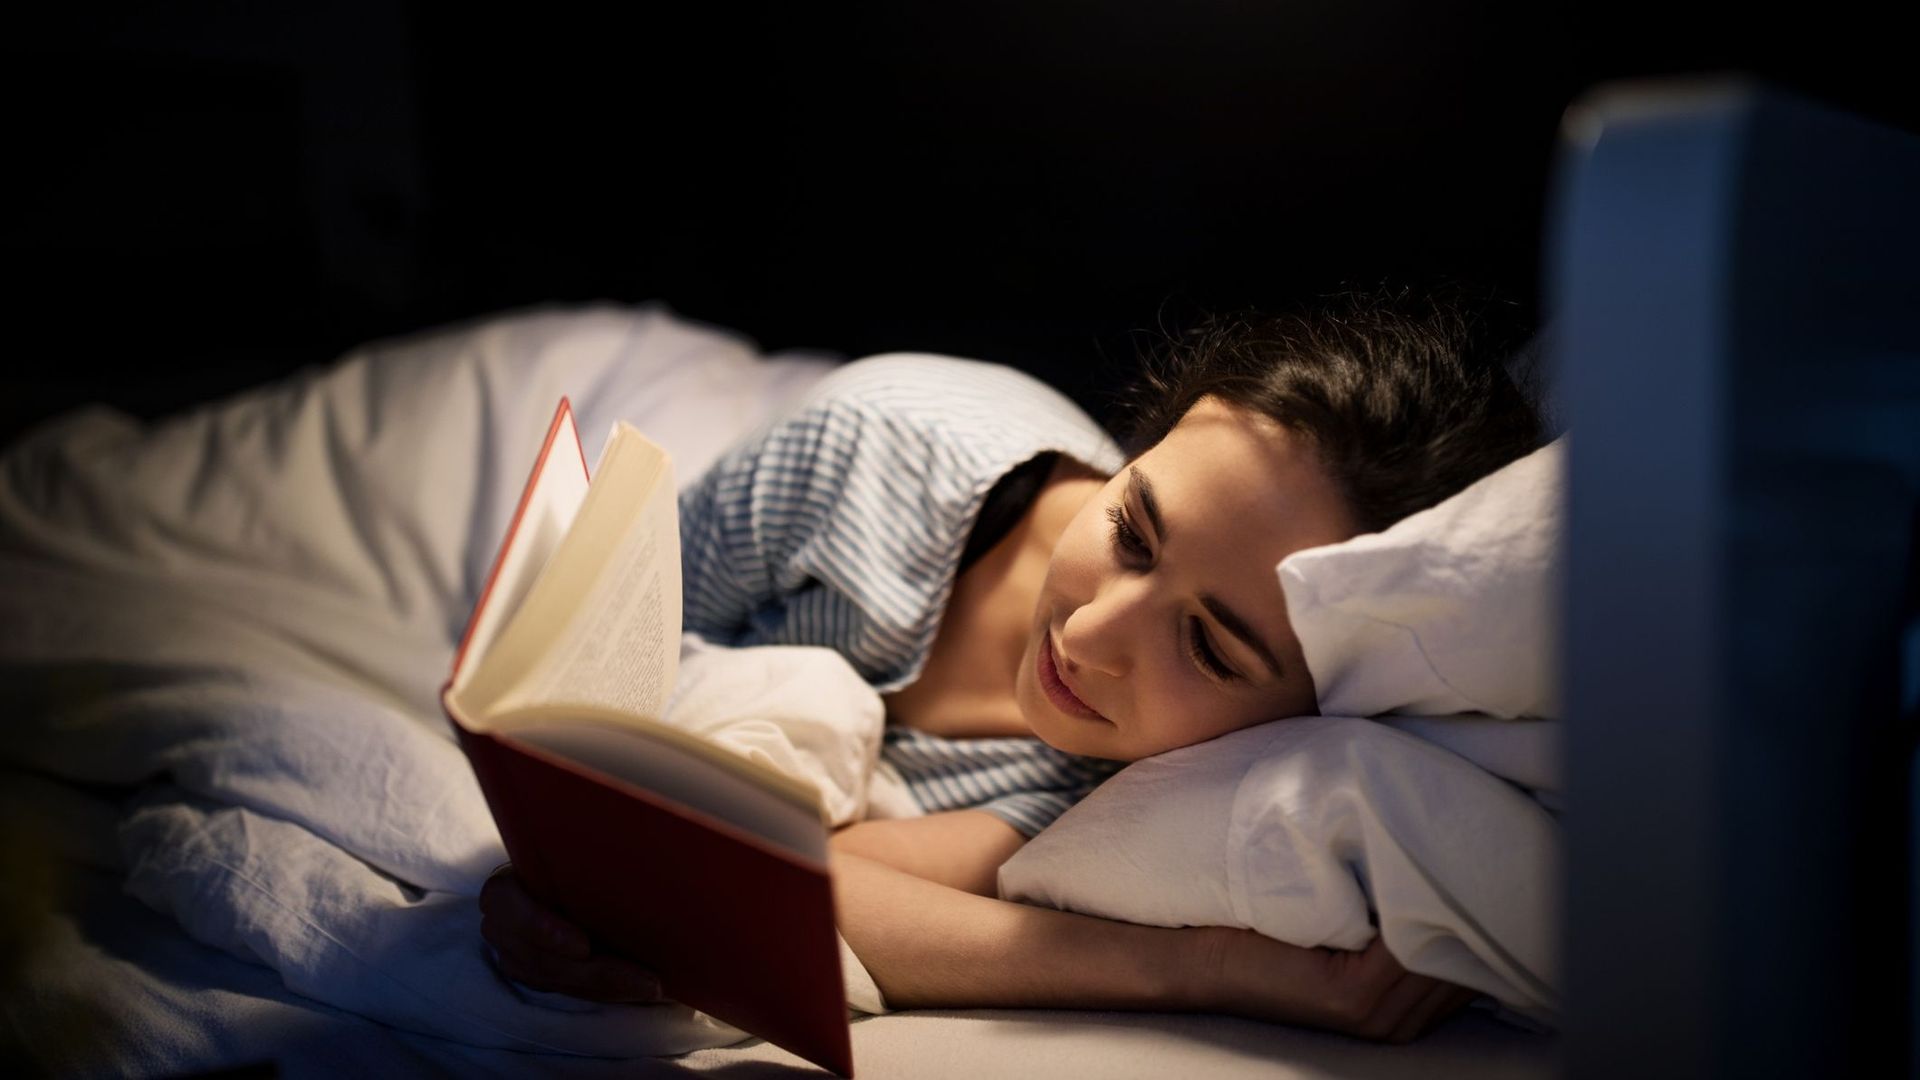 Ecrans, sieste, sophrologie : des pratiques à la portée de tous pour bien dormir